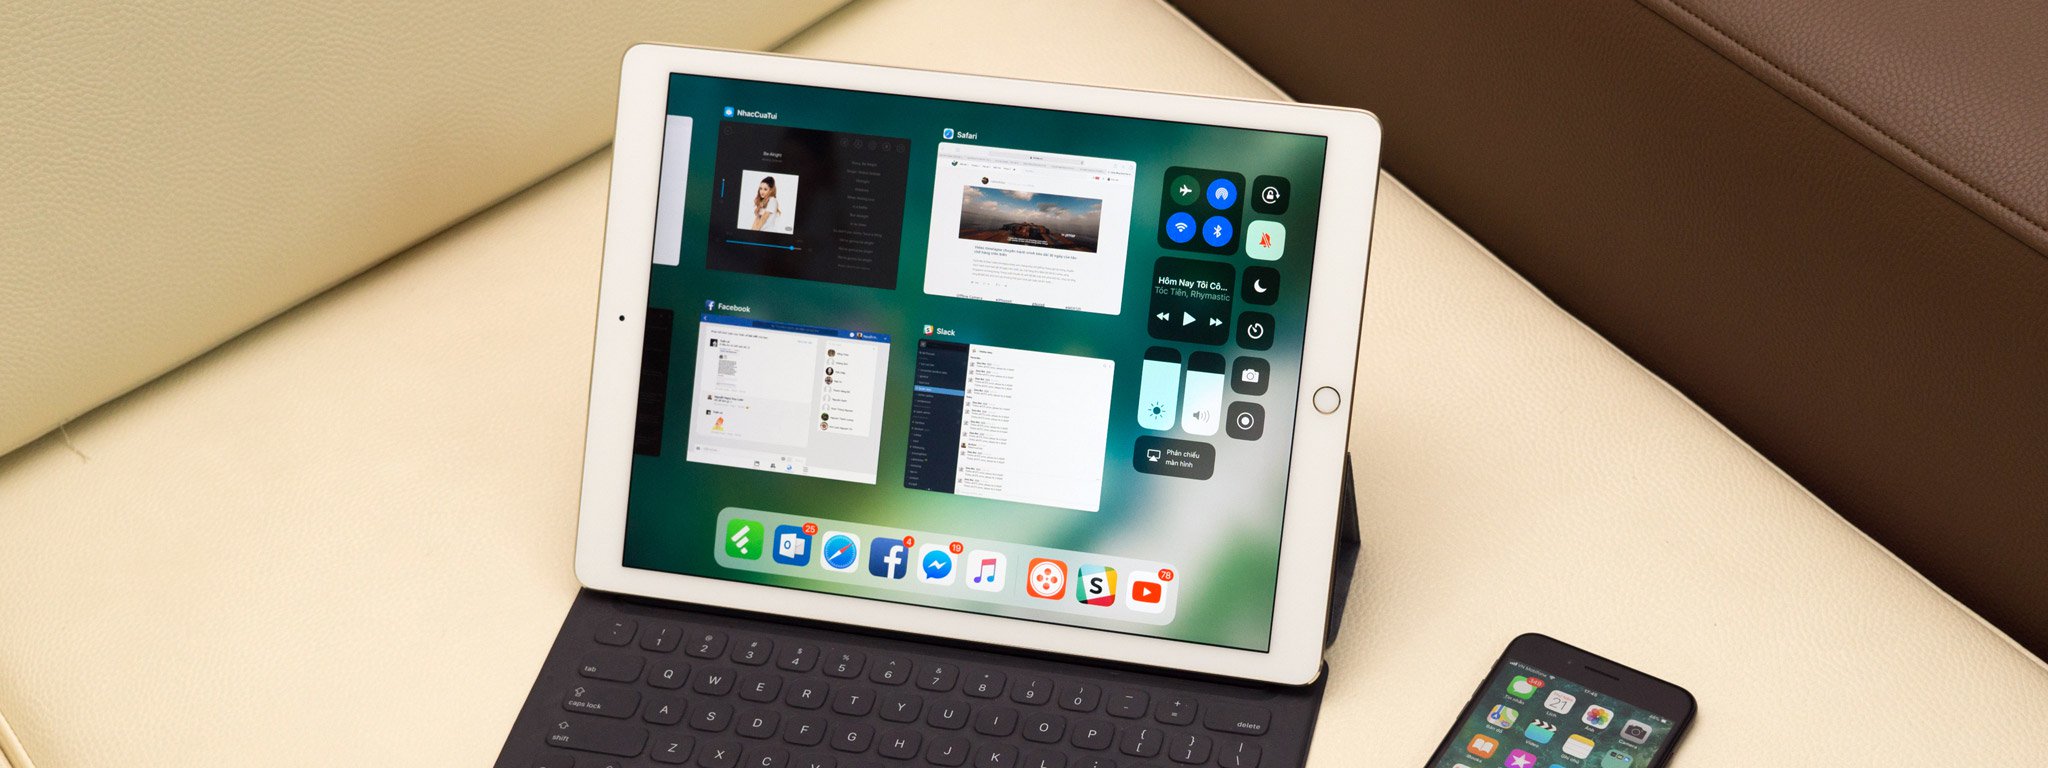 iOS 11.3 nói về một chiếc "iPad hiện đại", chính là iPad Pro 2018 với Face ID?